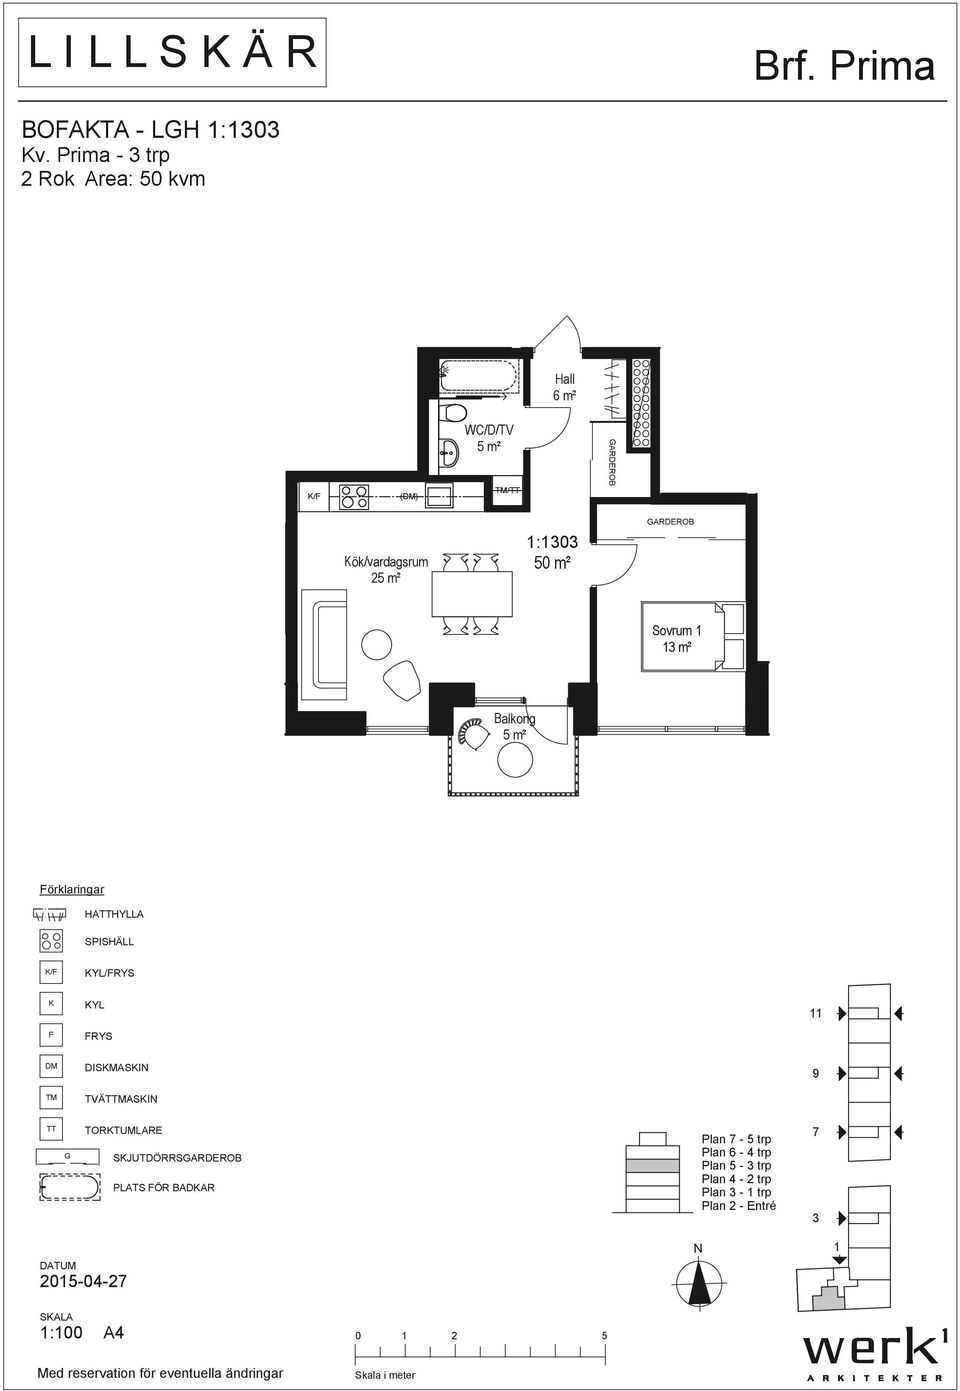 ök/vardagsrum 25 m² :0 50 m² Sovrum 5 m² örklaringar HAHYLLA / YL/RYS